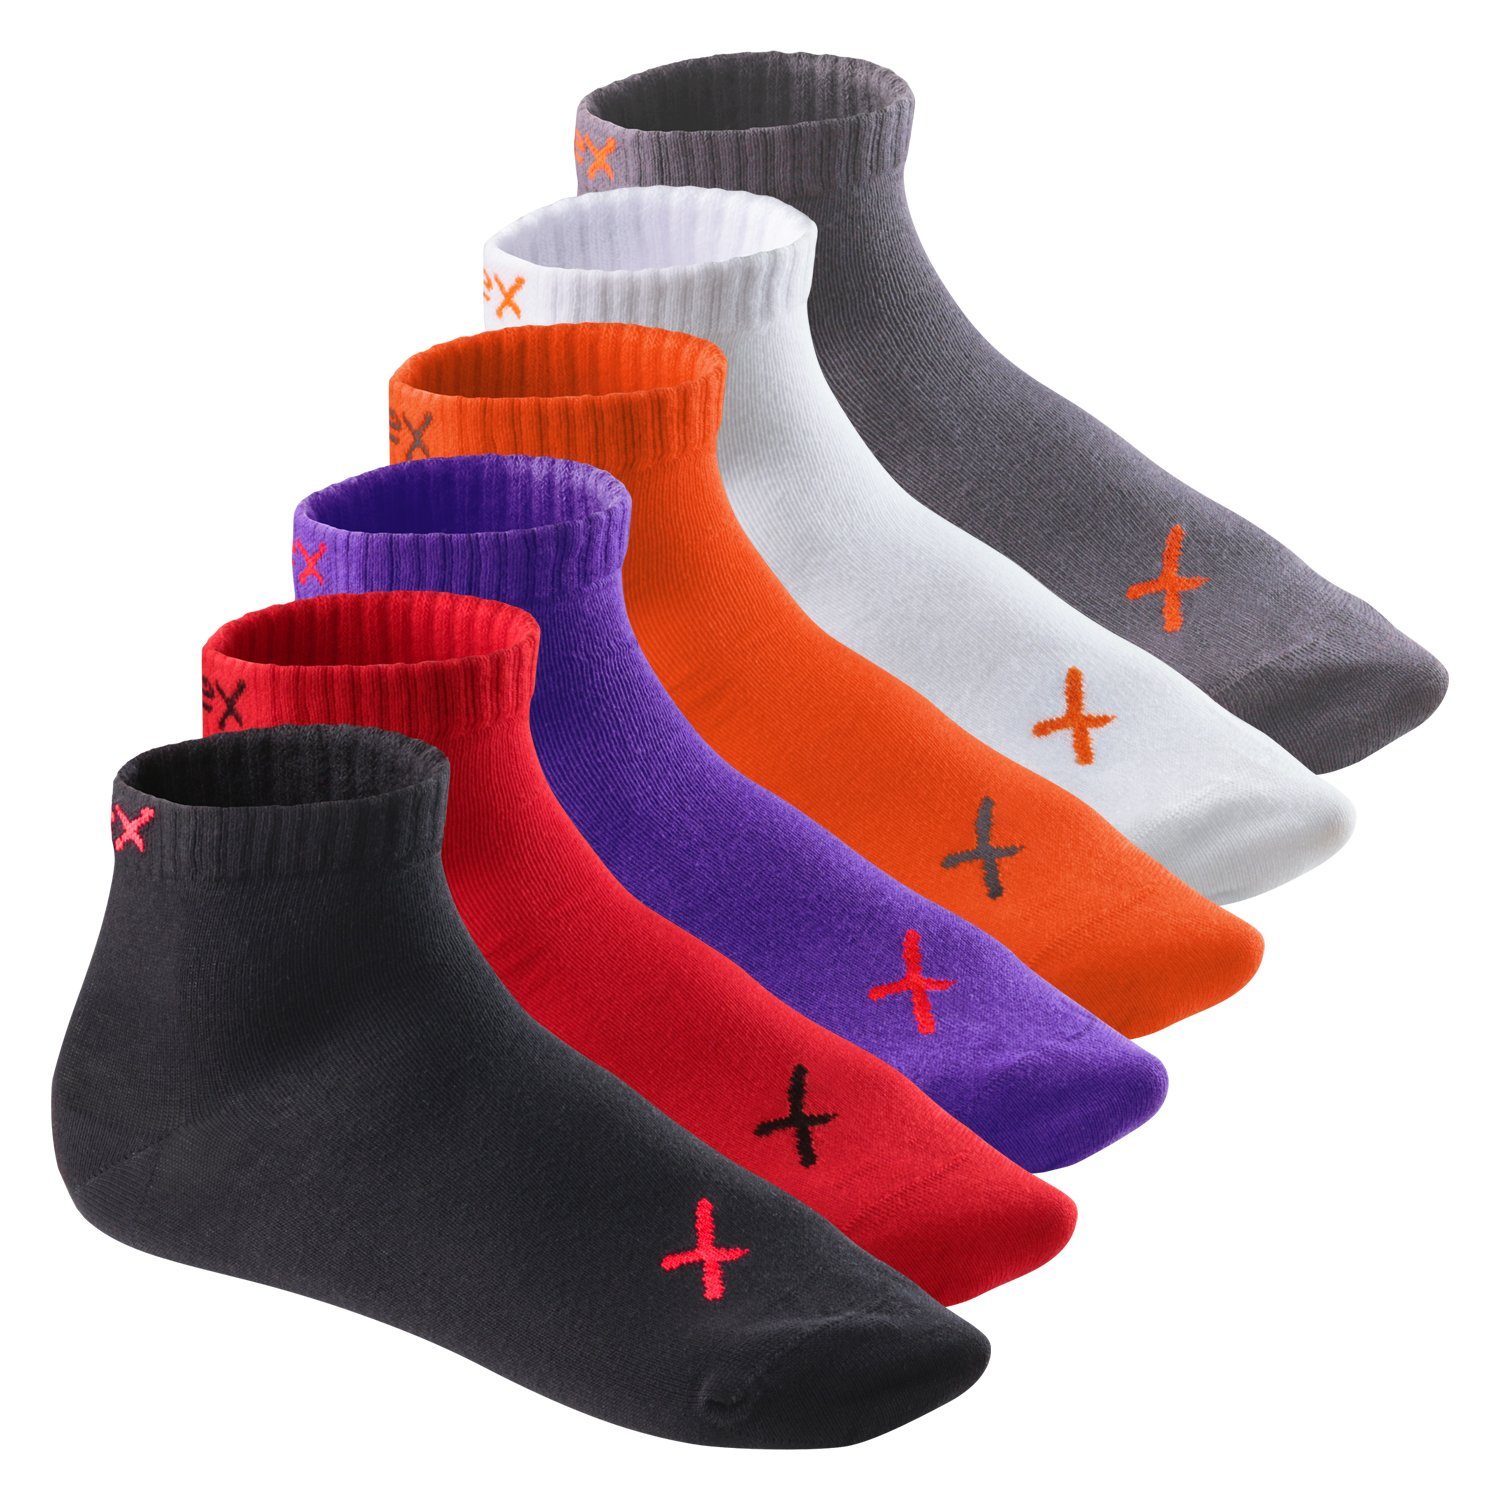 CFLEX Kurzsocken Lifestyle Kurzschaft Socken für Damen & Herren (6 Paar) Sneaker Poppy Iridium Mix